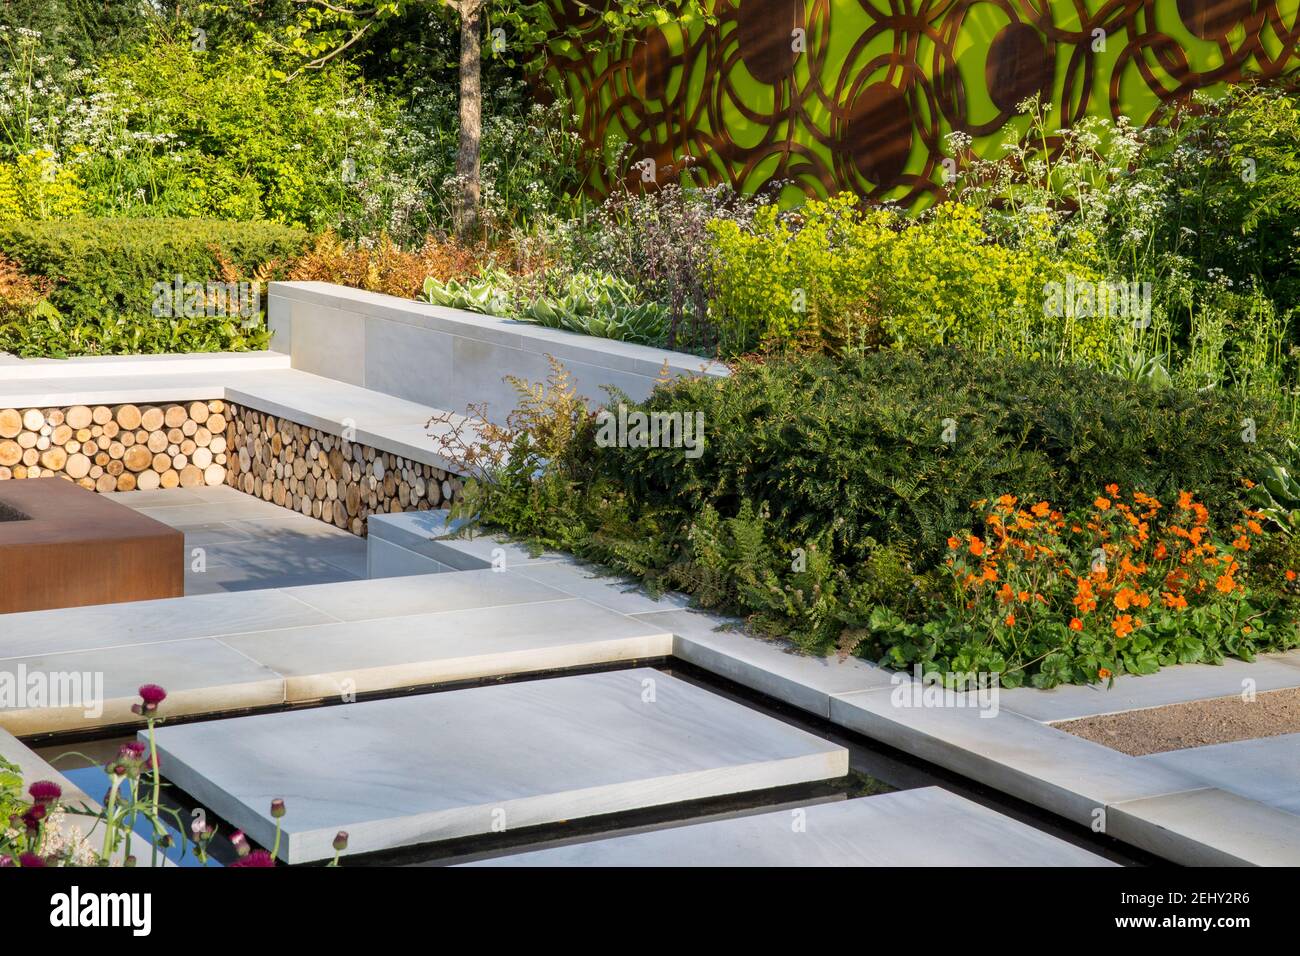 Vue sur le jardin anglais moderne Yorkstone qui fait marcher des dalles de pierre sur une surface d'eau menant à un jardin en contrebas avec banc de pierre, bordant les fleurs du printemps britannique Banque D'Images